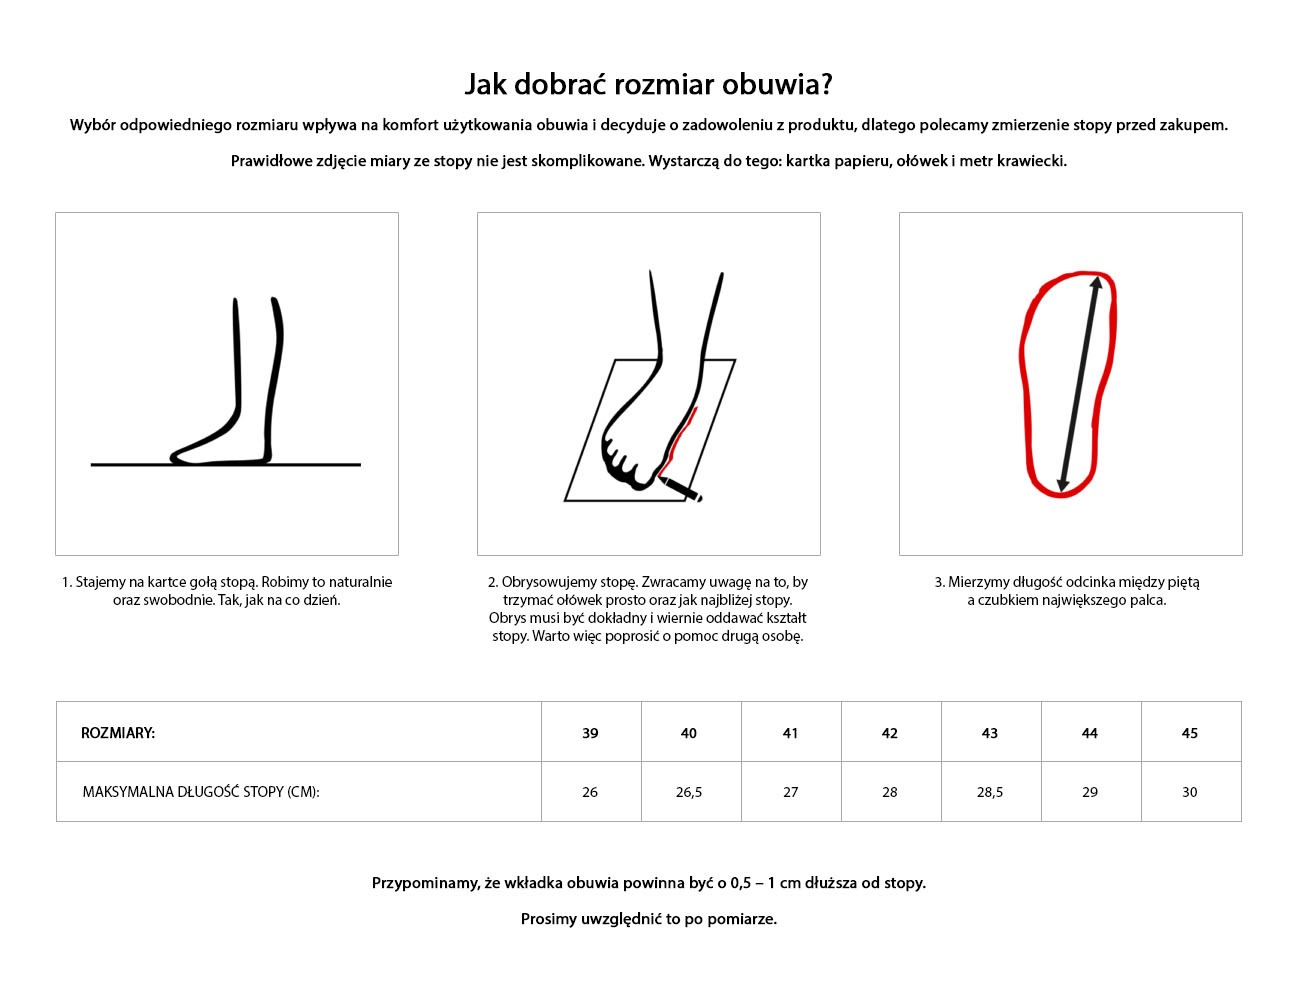 Jak mierzyć - buty (żmija)